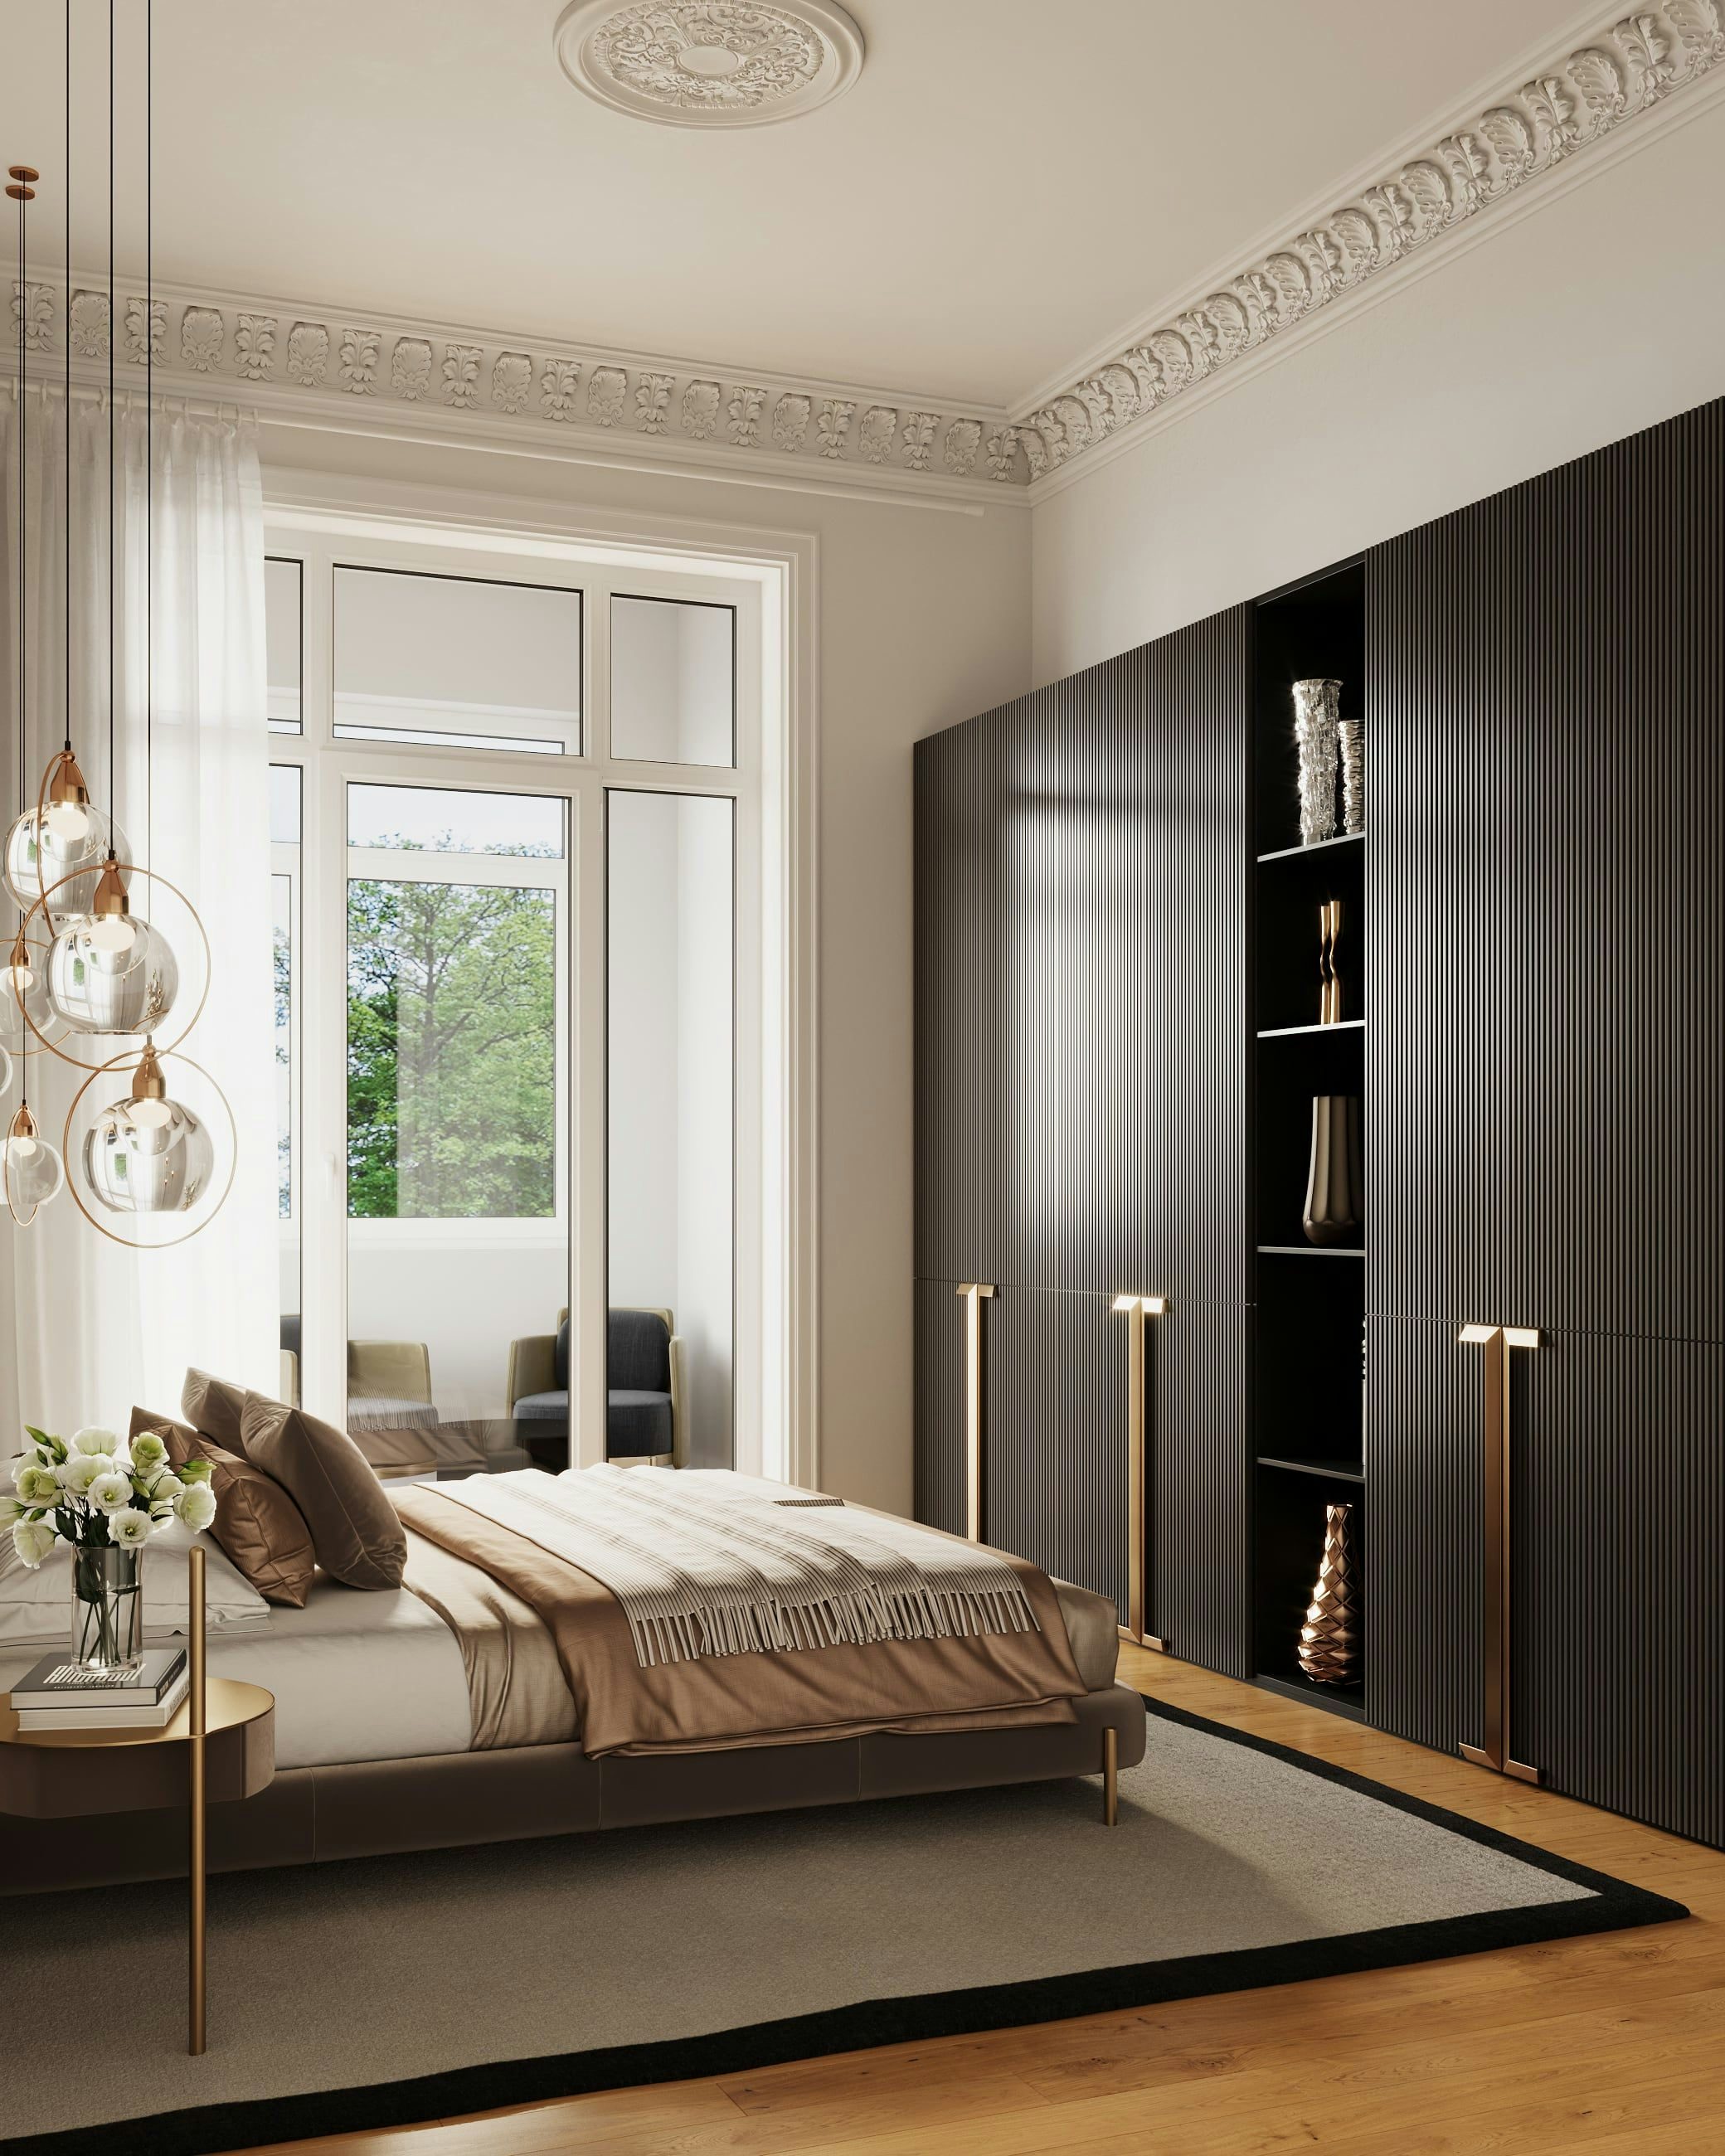 3D Innen Visualisierung des Hauptschlafzimmers in einer renovierten historischen Wohnung in der Fliederstraße, Hamburg